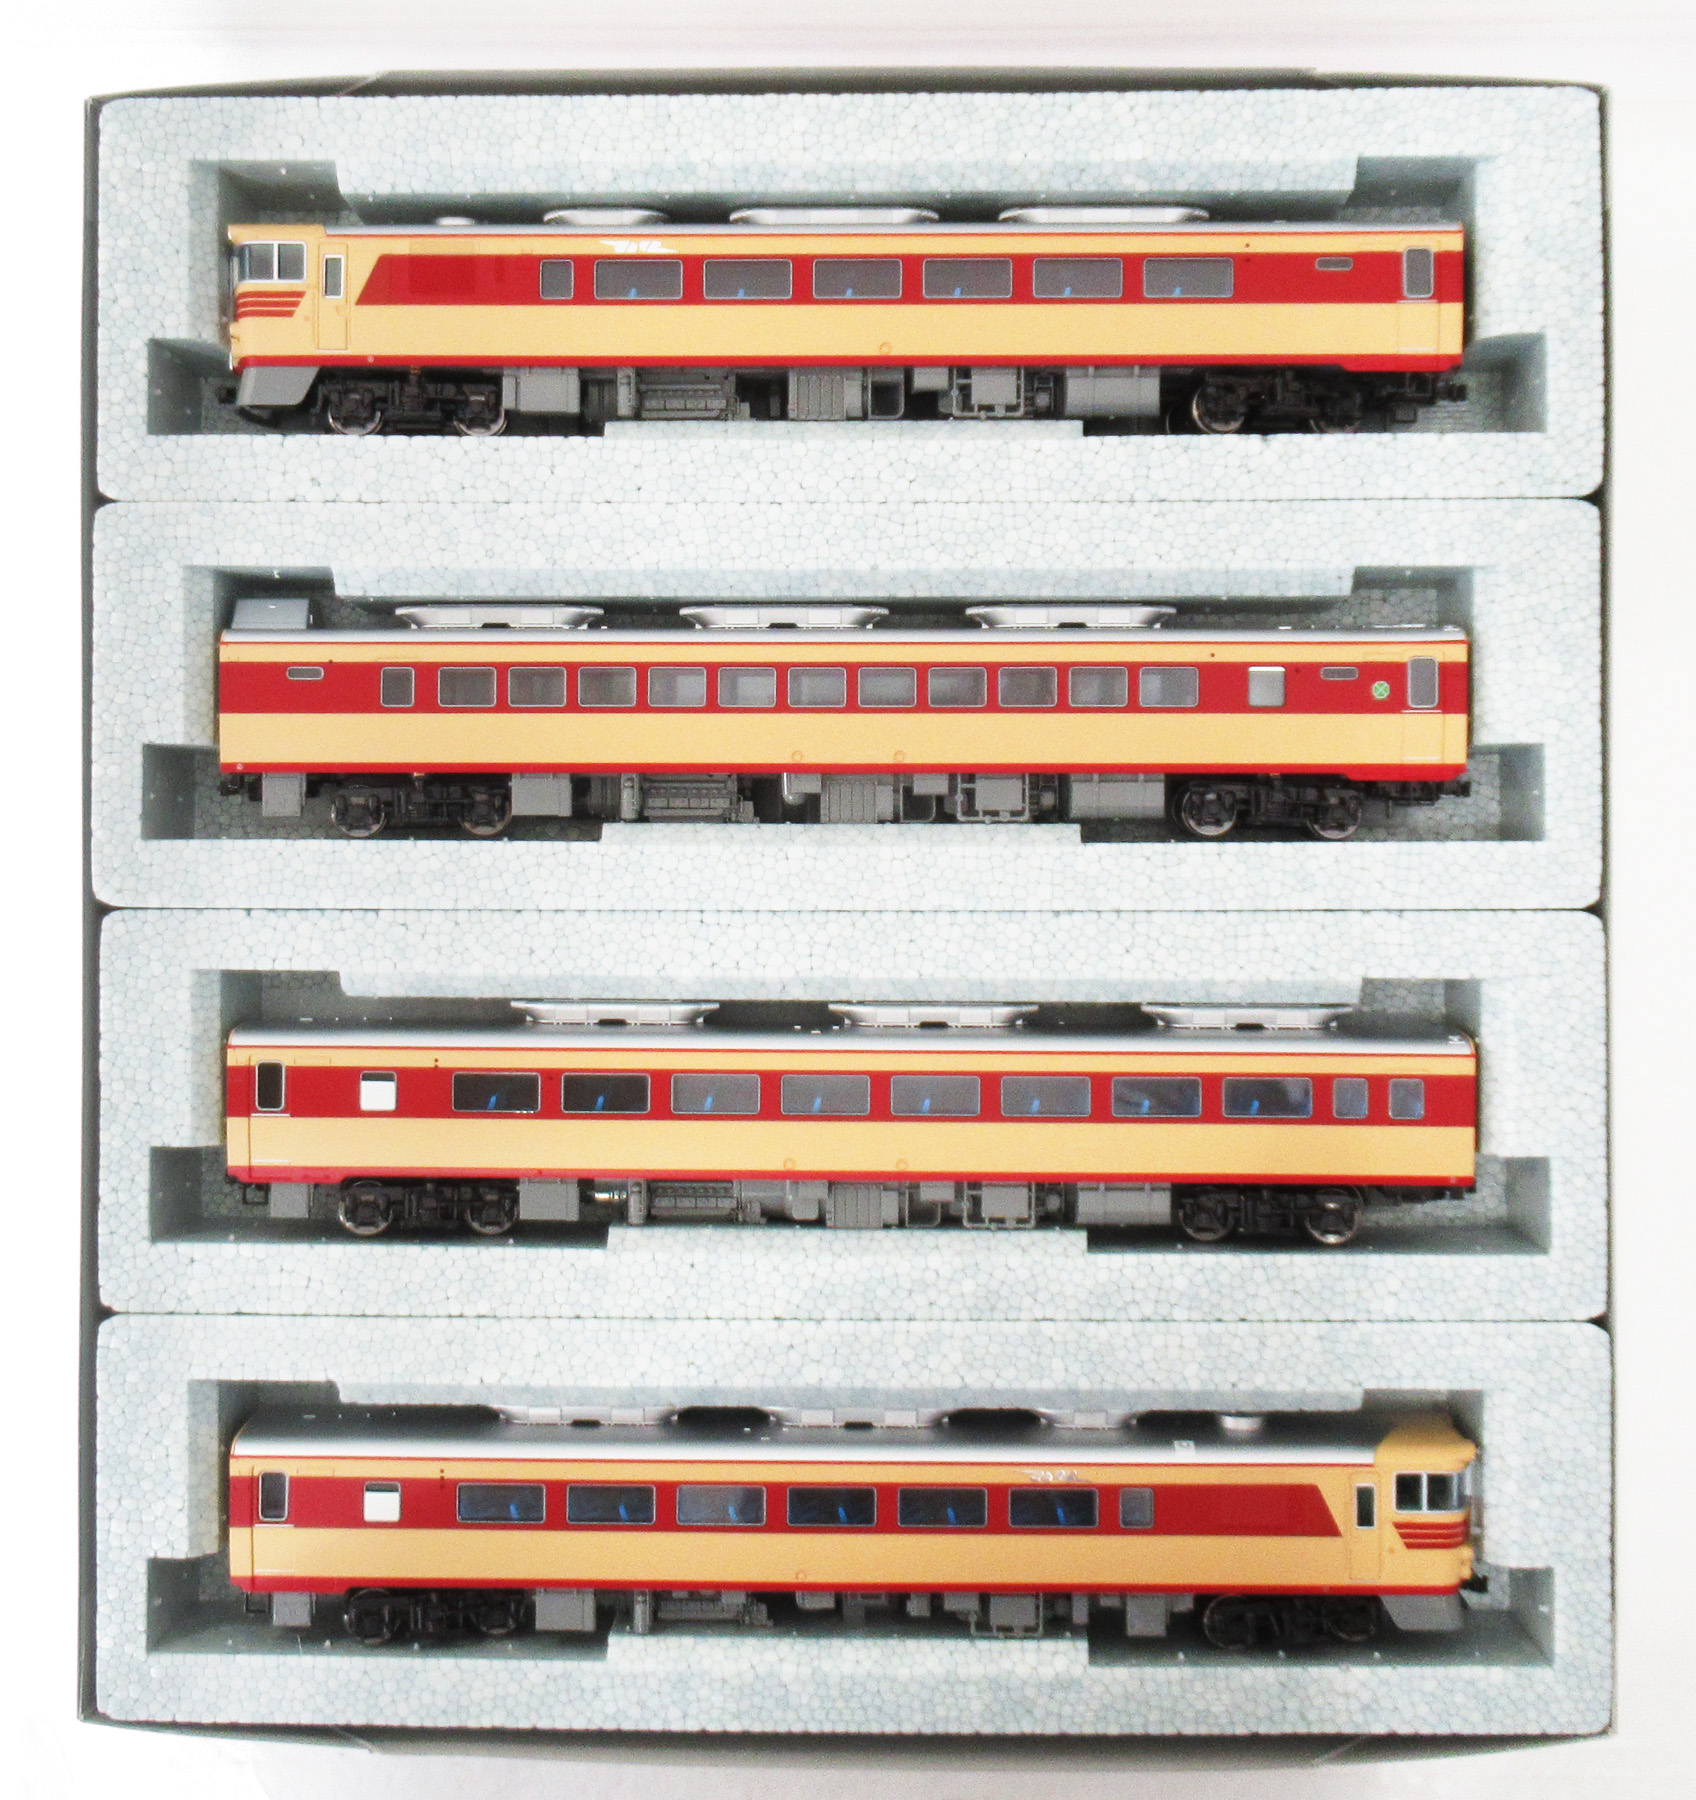 公式]鉄道模型(3-509-1キハ82系 4両基本セット)商品詳細｜KATO(カトー